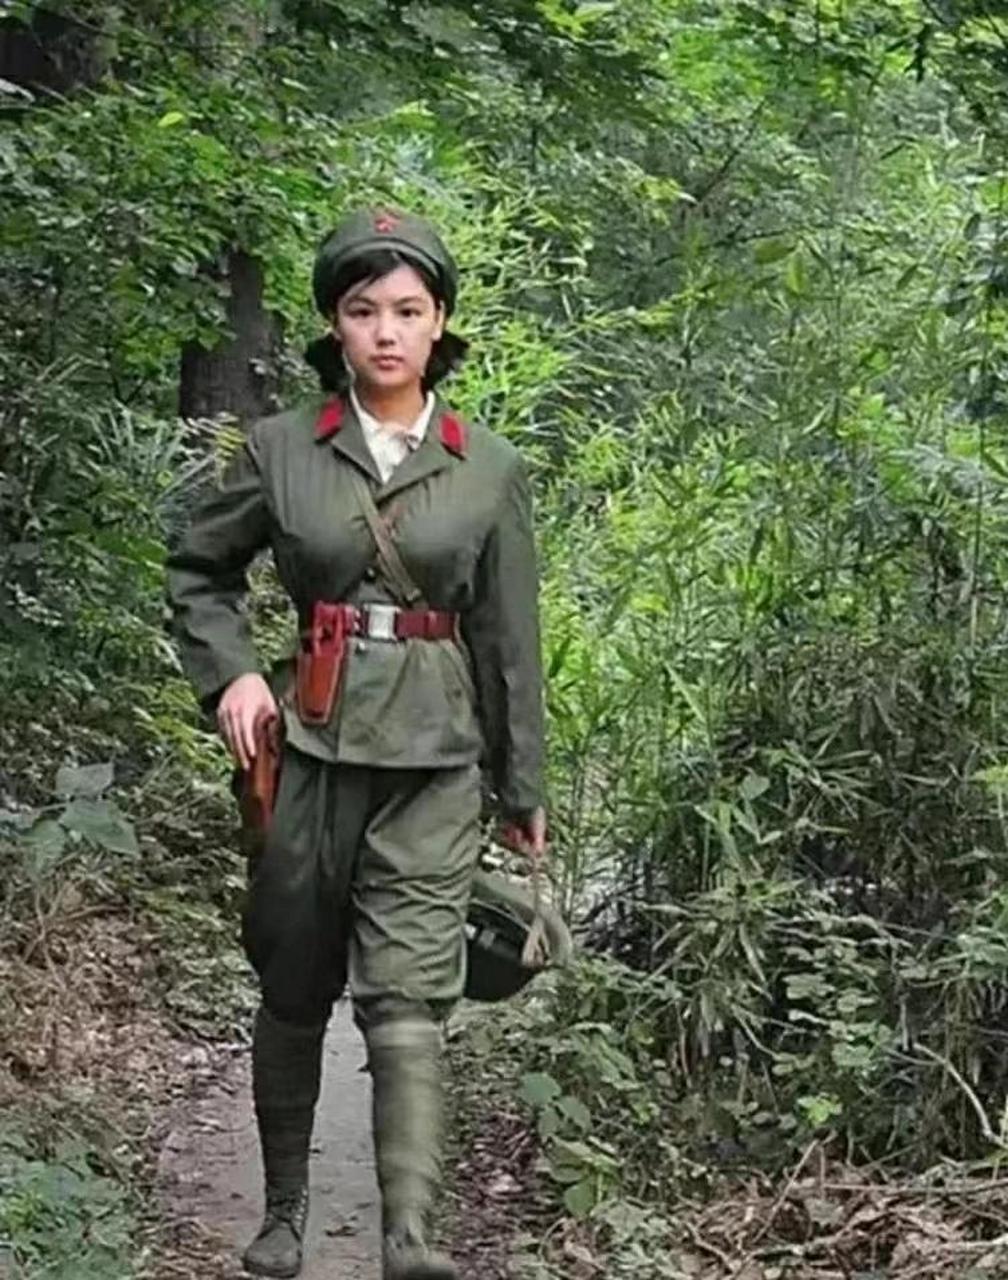 一张80年代的解放军女兵老照片,天生丽质,加上一身军装的英气,有种异